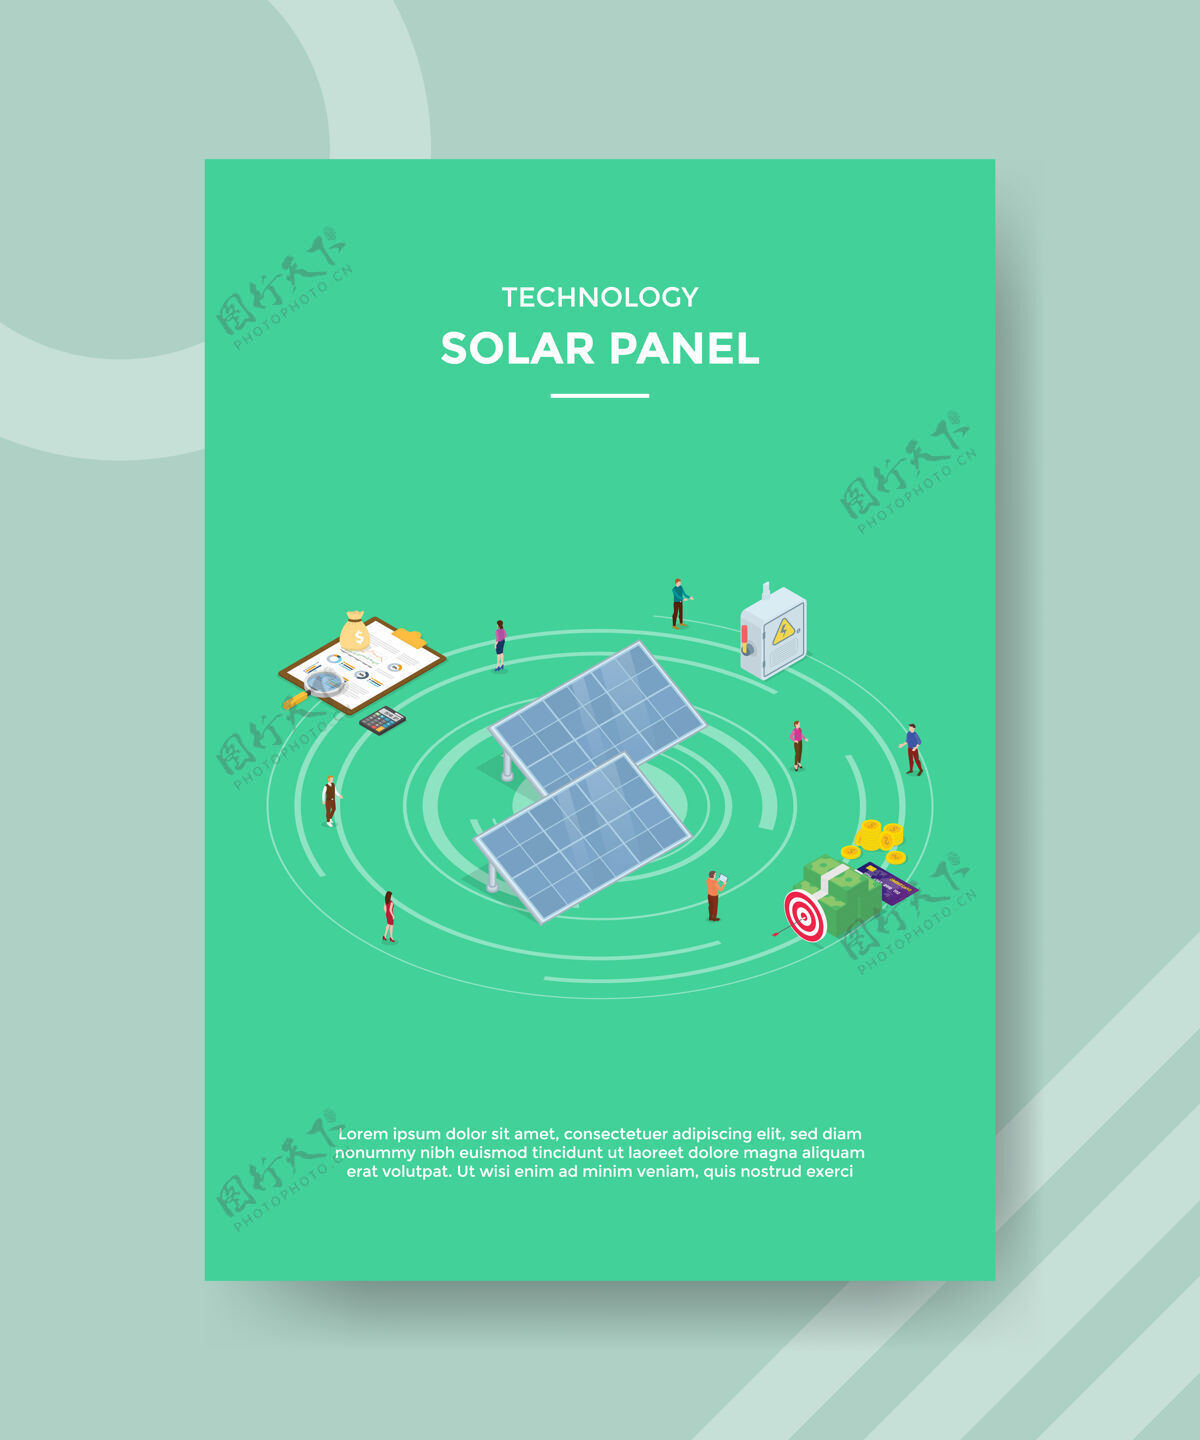 成本科技太阳能电池板的人站在周围的钱图表面板等距节省